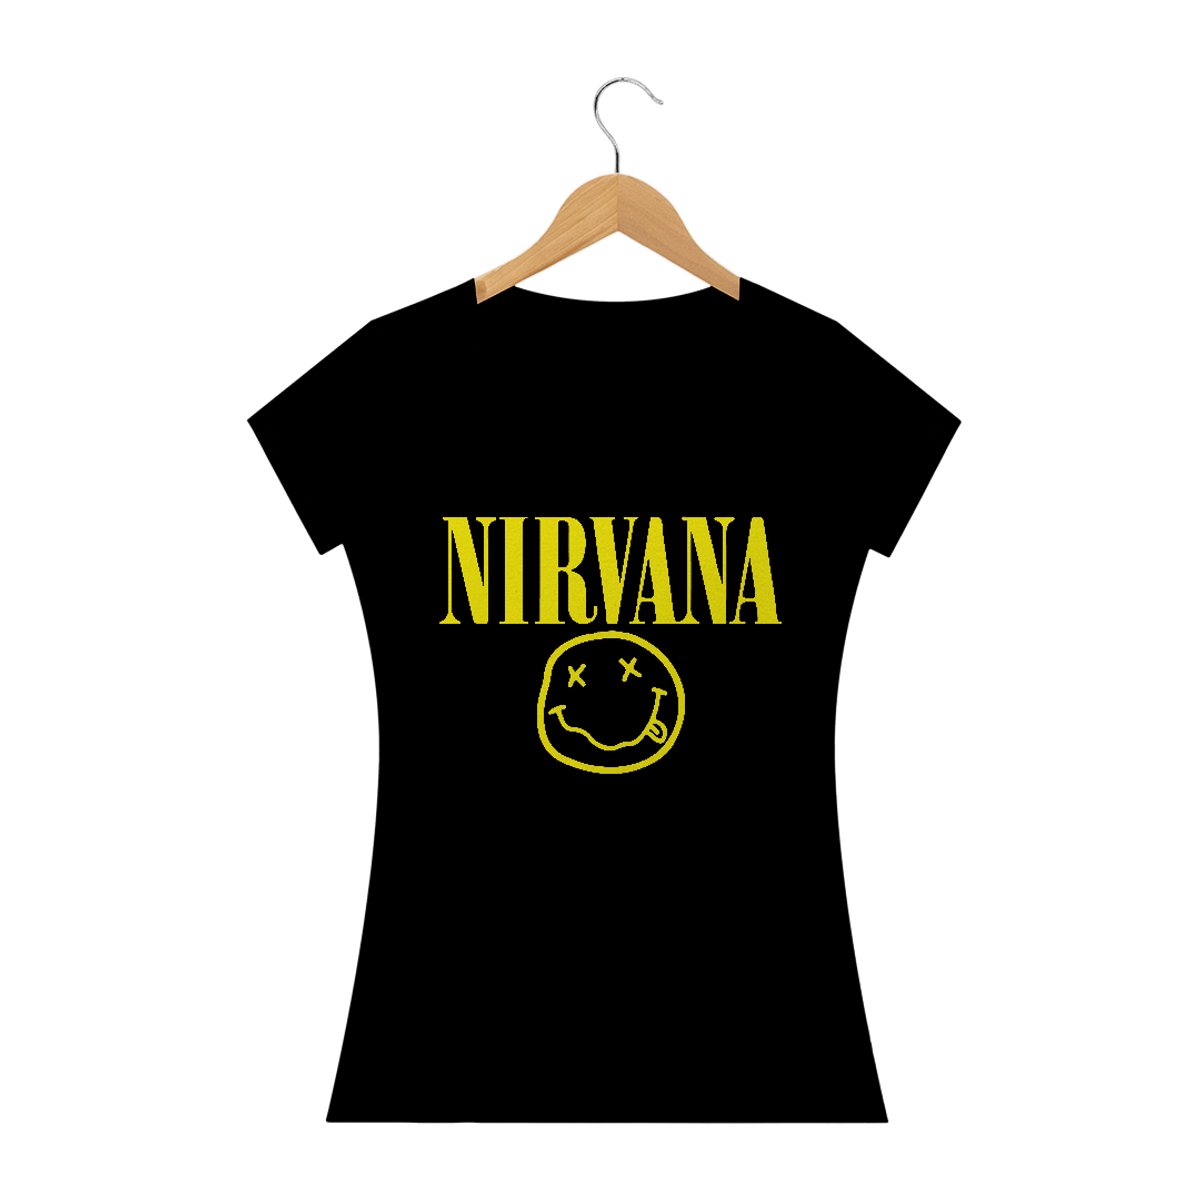 Nome do produto: Camiseta Feminina Nirvana